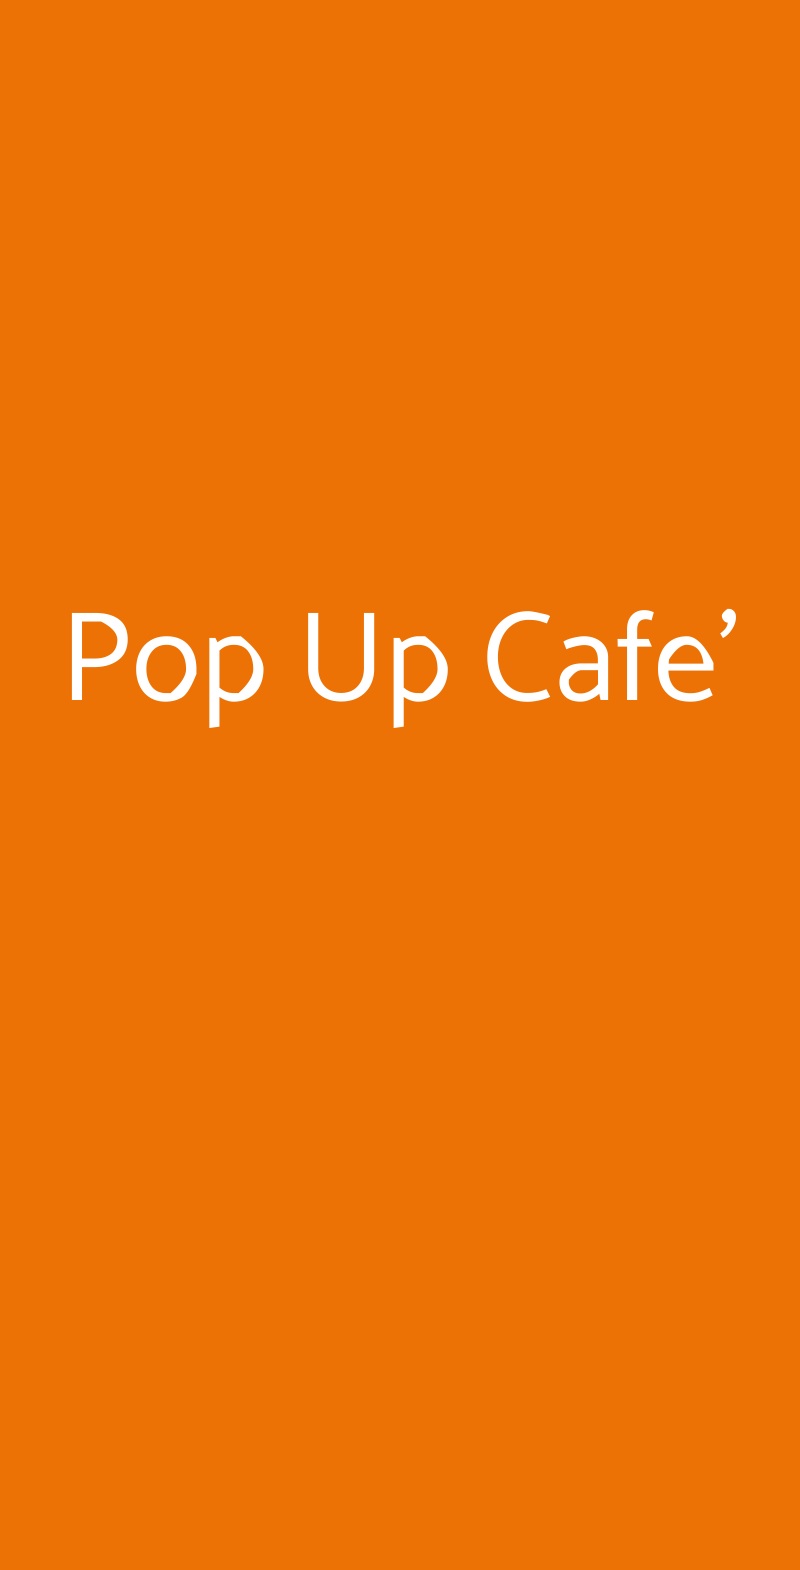 Pop Up Cafe' Milano menù 1 pagina